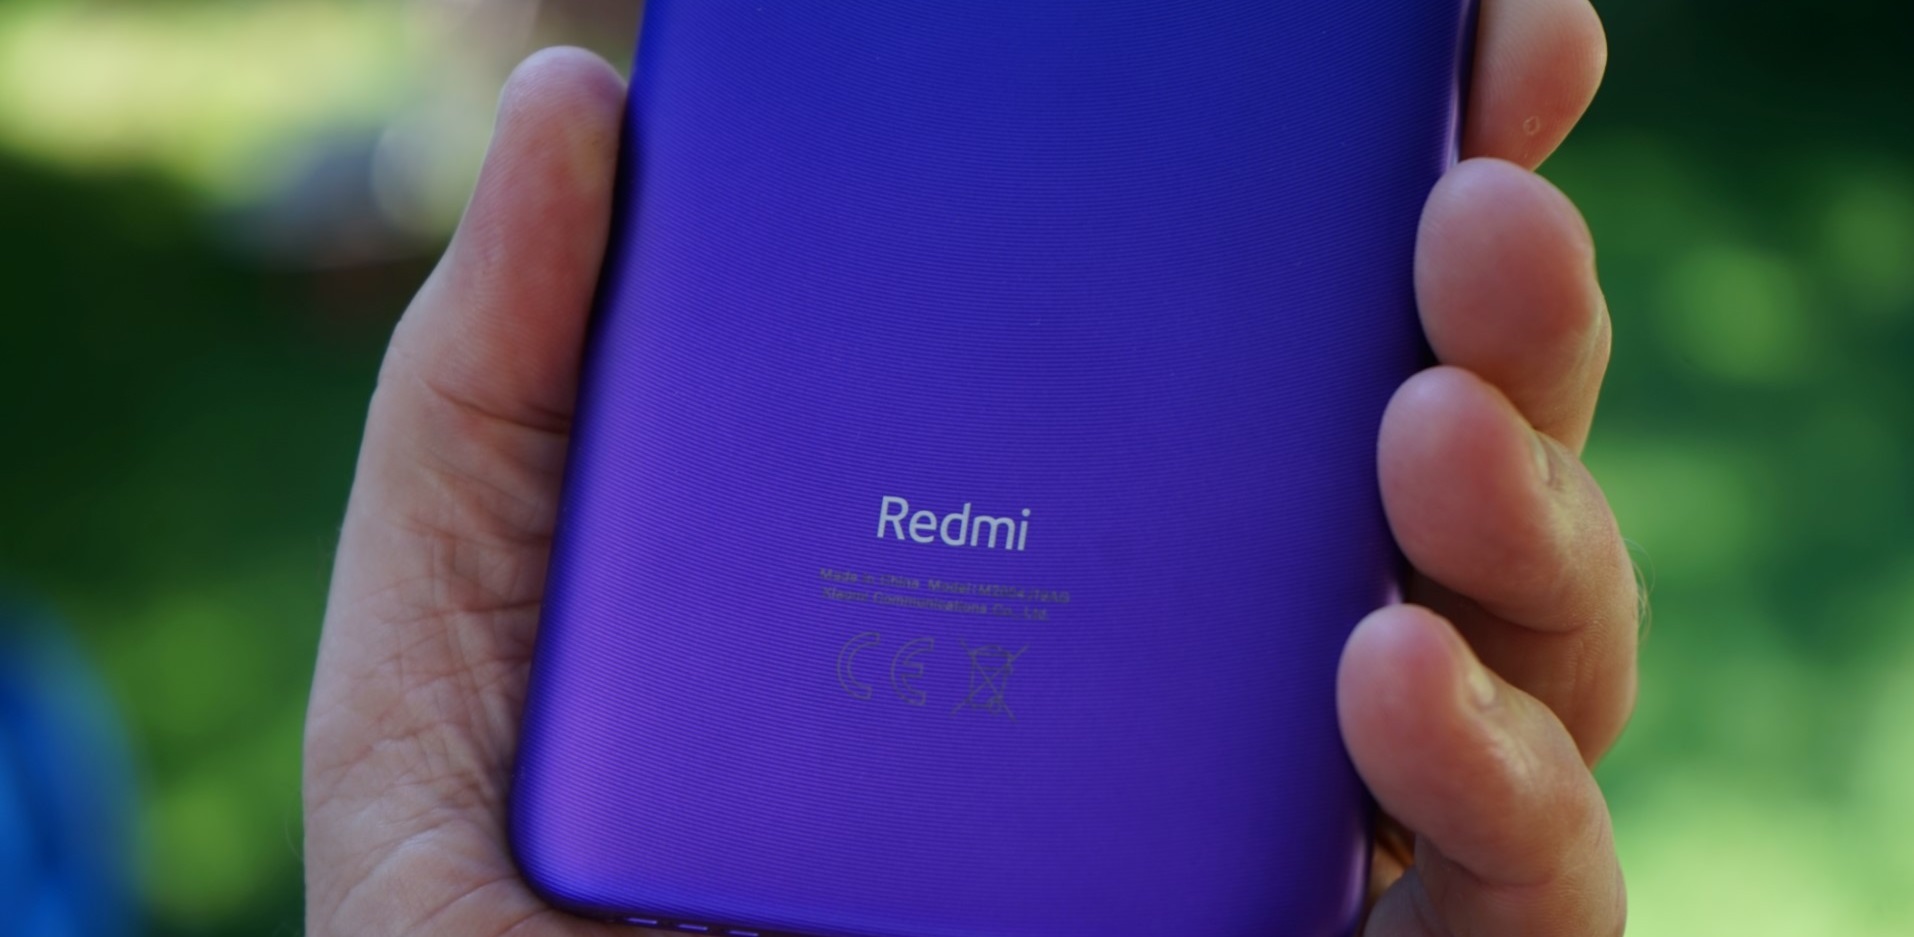 مواصفات وأسعار أفضل هواتف Redmi في كل الفئات في السوق المصري